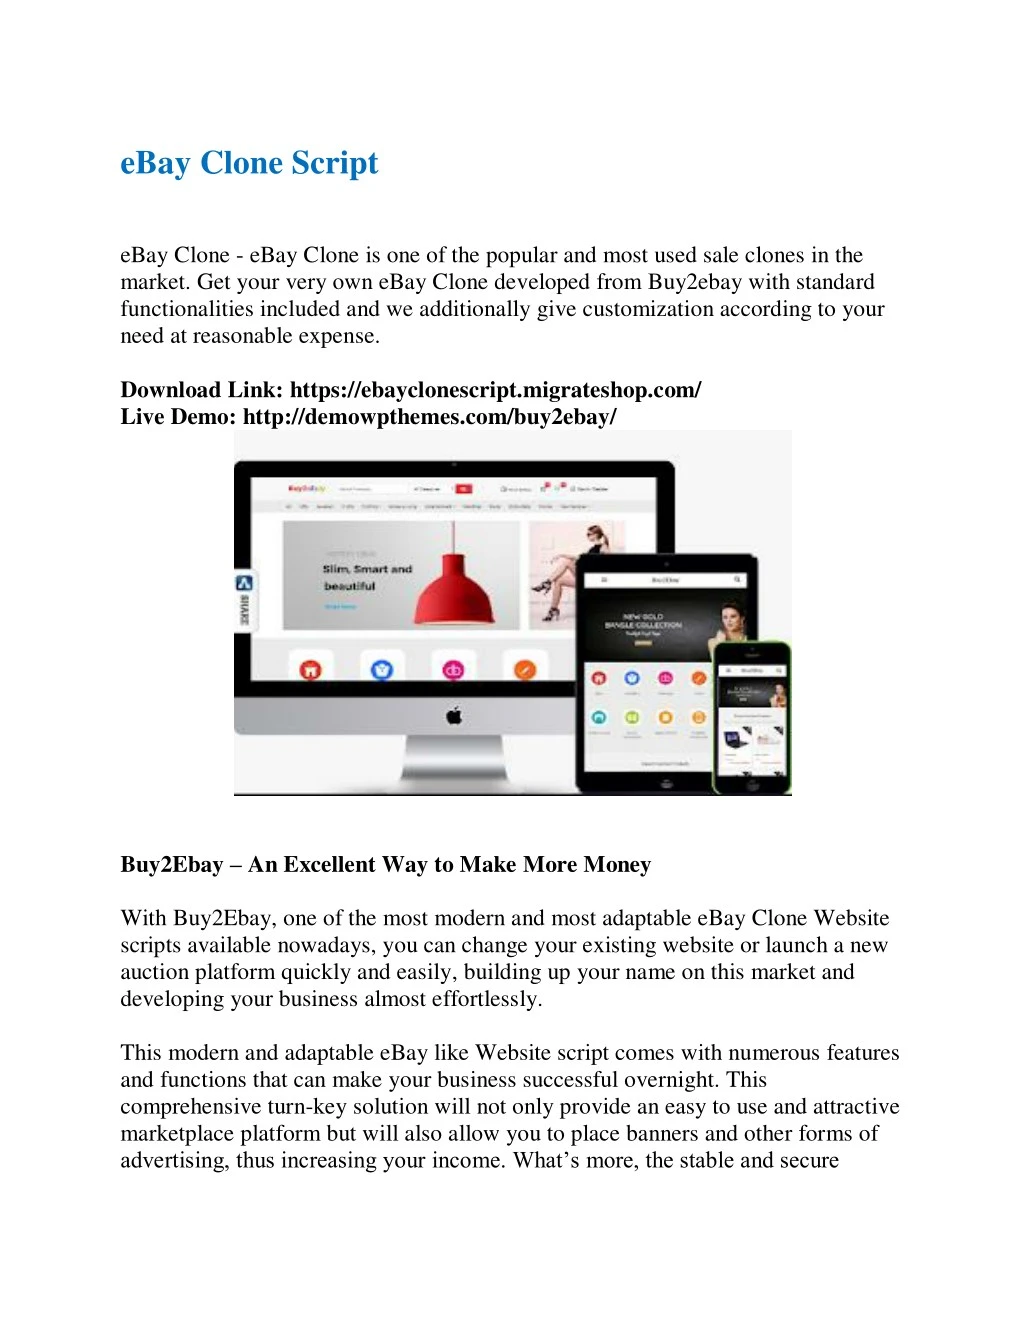 ebay clone script